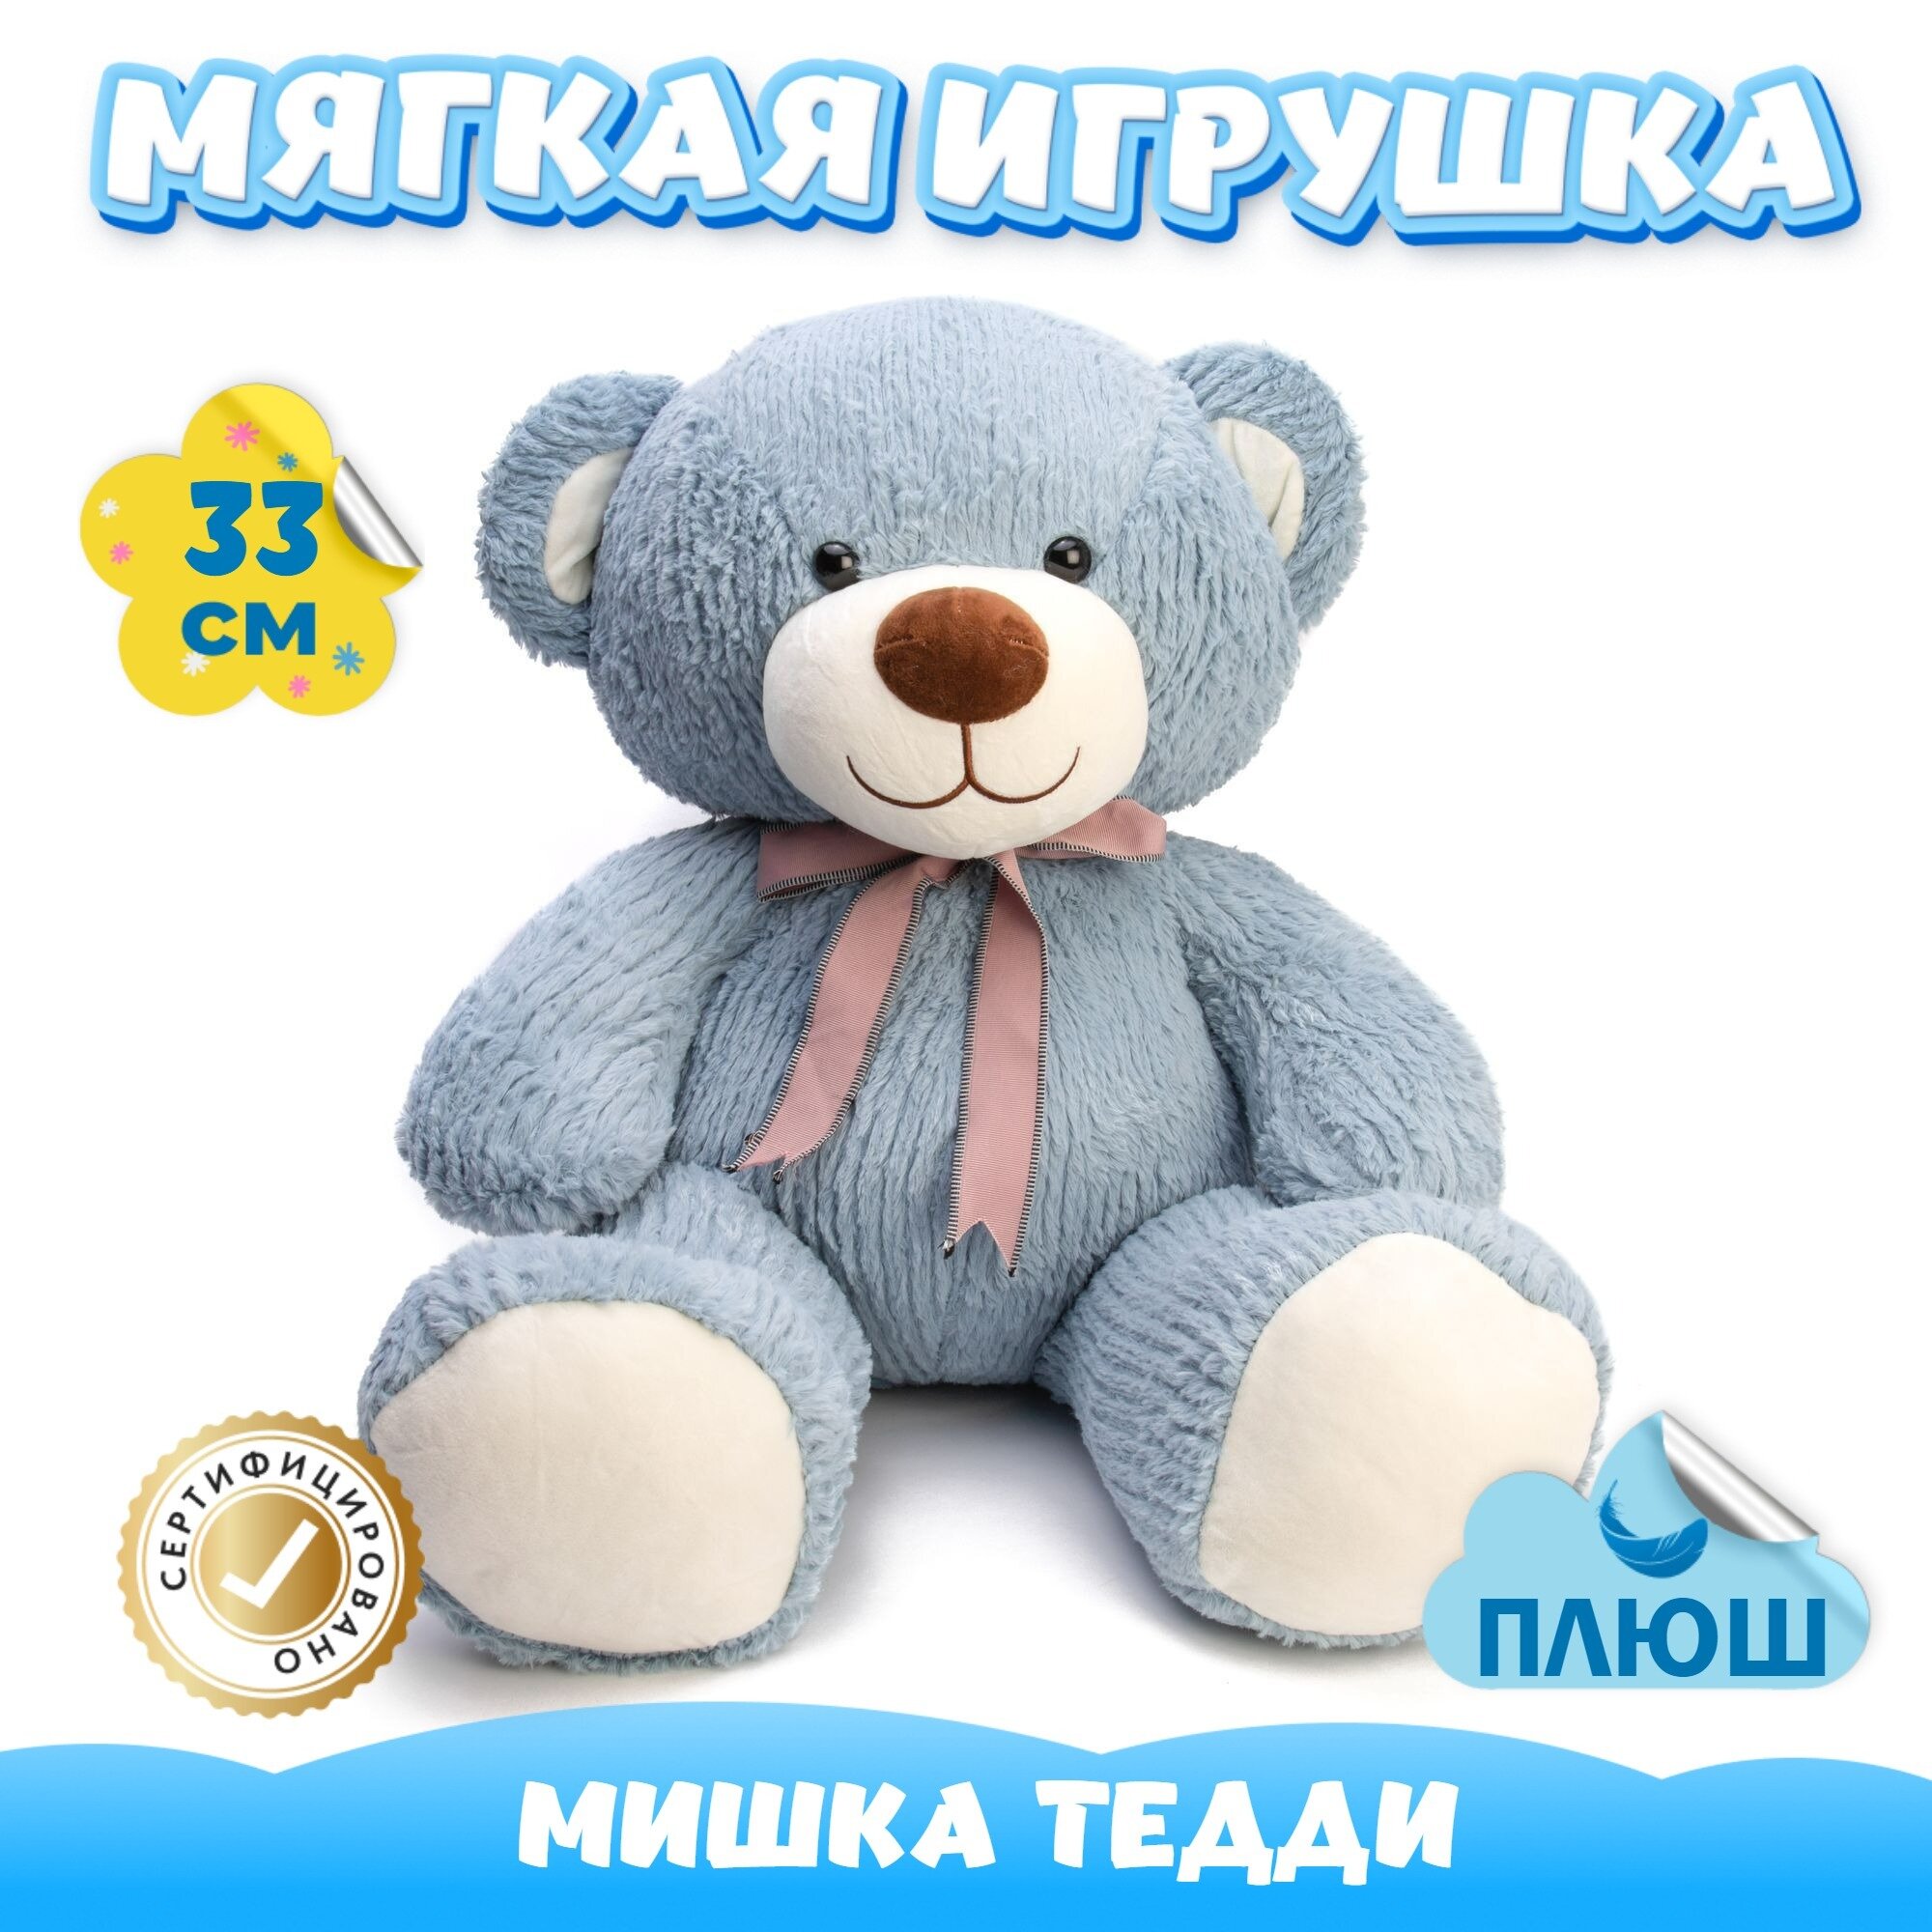 Мягкая игрушка Мишка с бантиком для девочек и мальчиков / Плюшевый Медведь для малышей KiDWoW голубой 33см